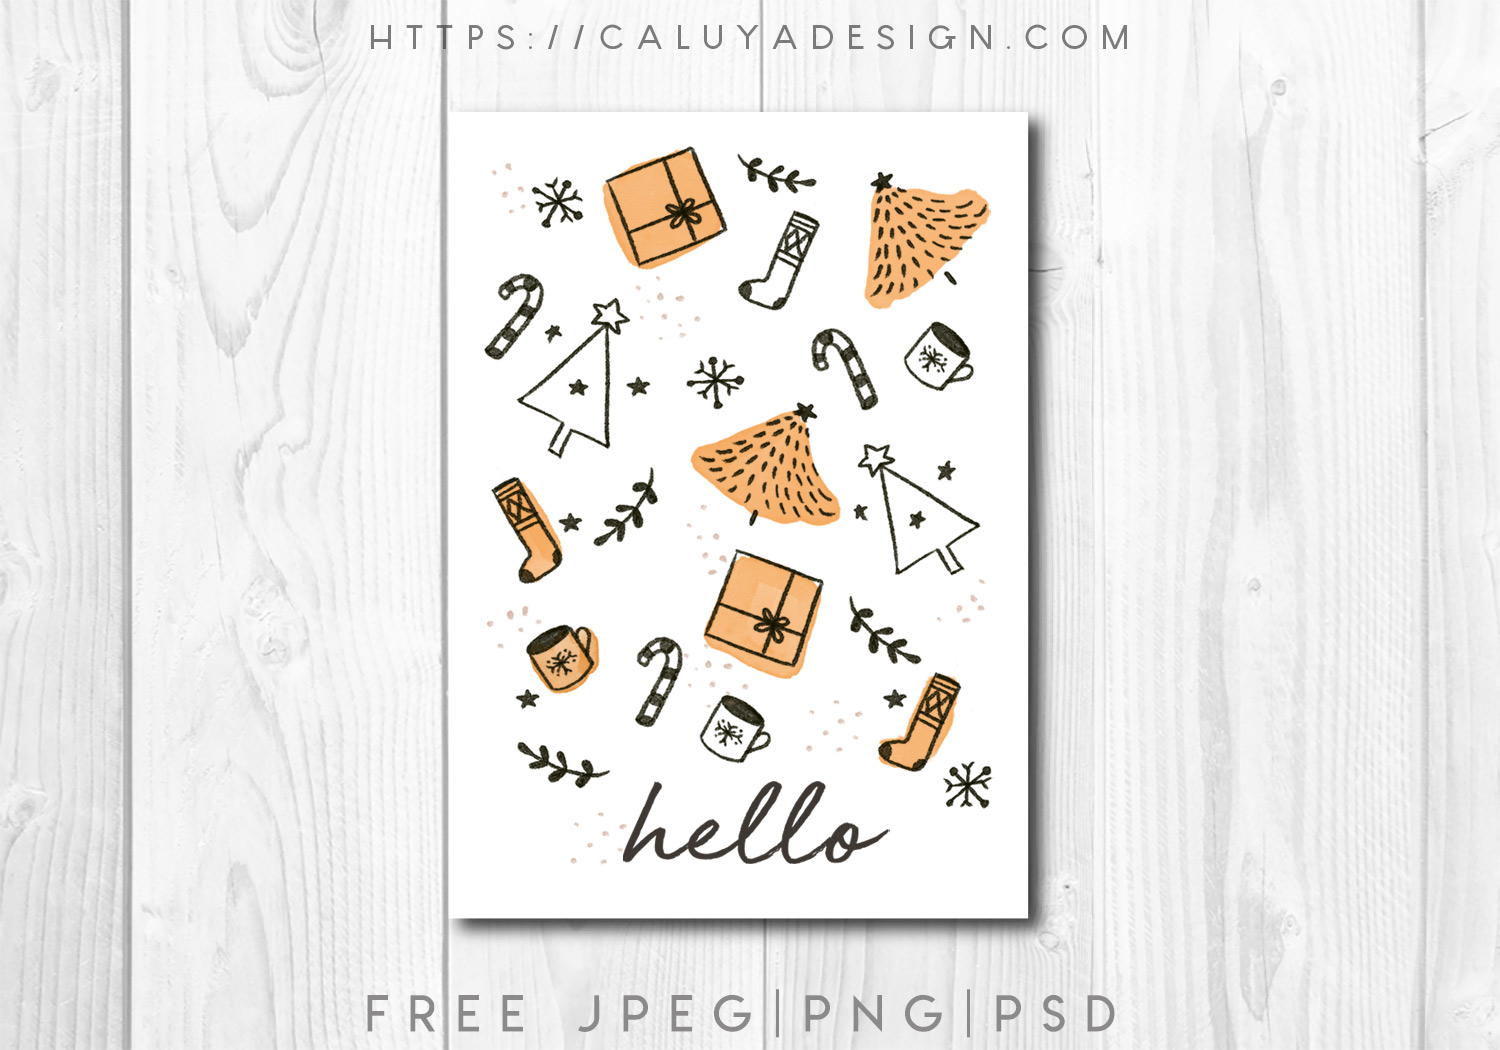 Free Printable Christmas Card Graphic PNG, JPEG & PSD